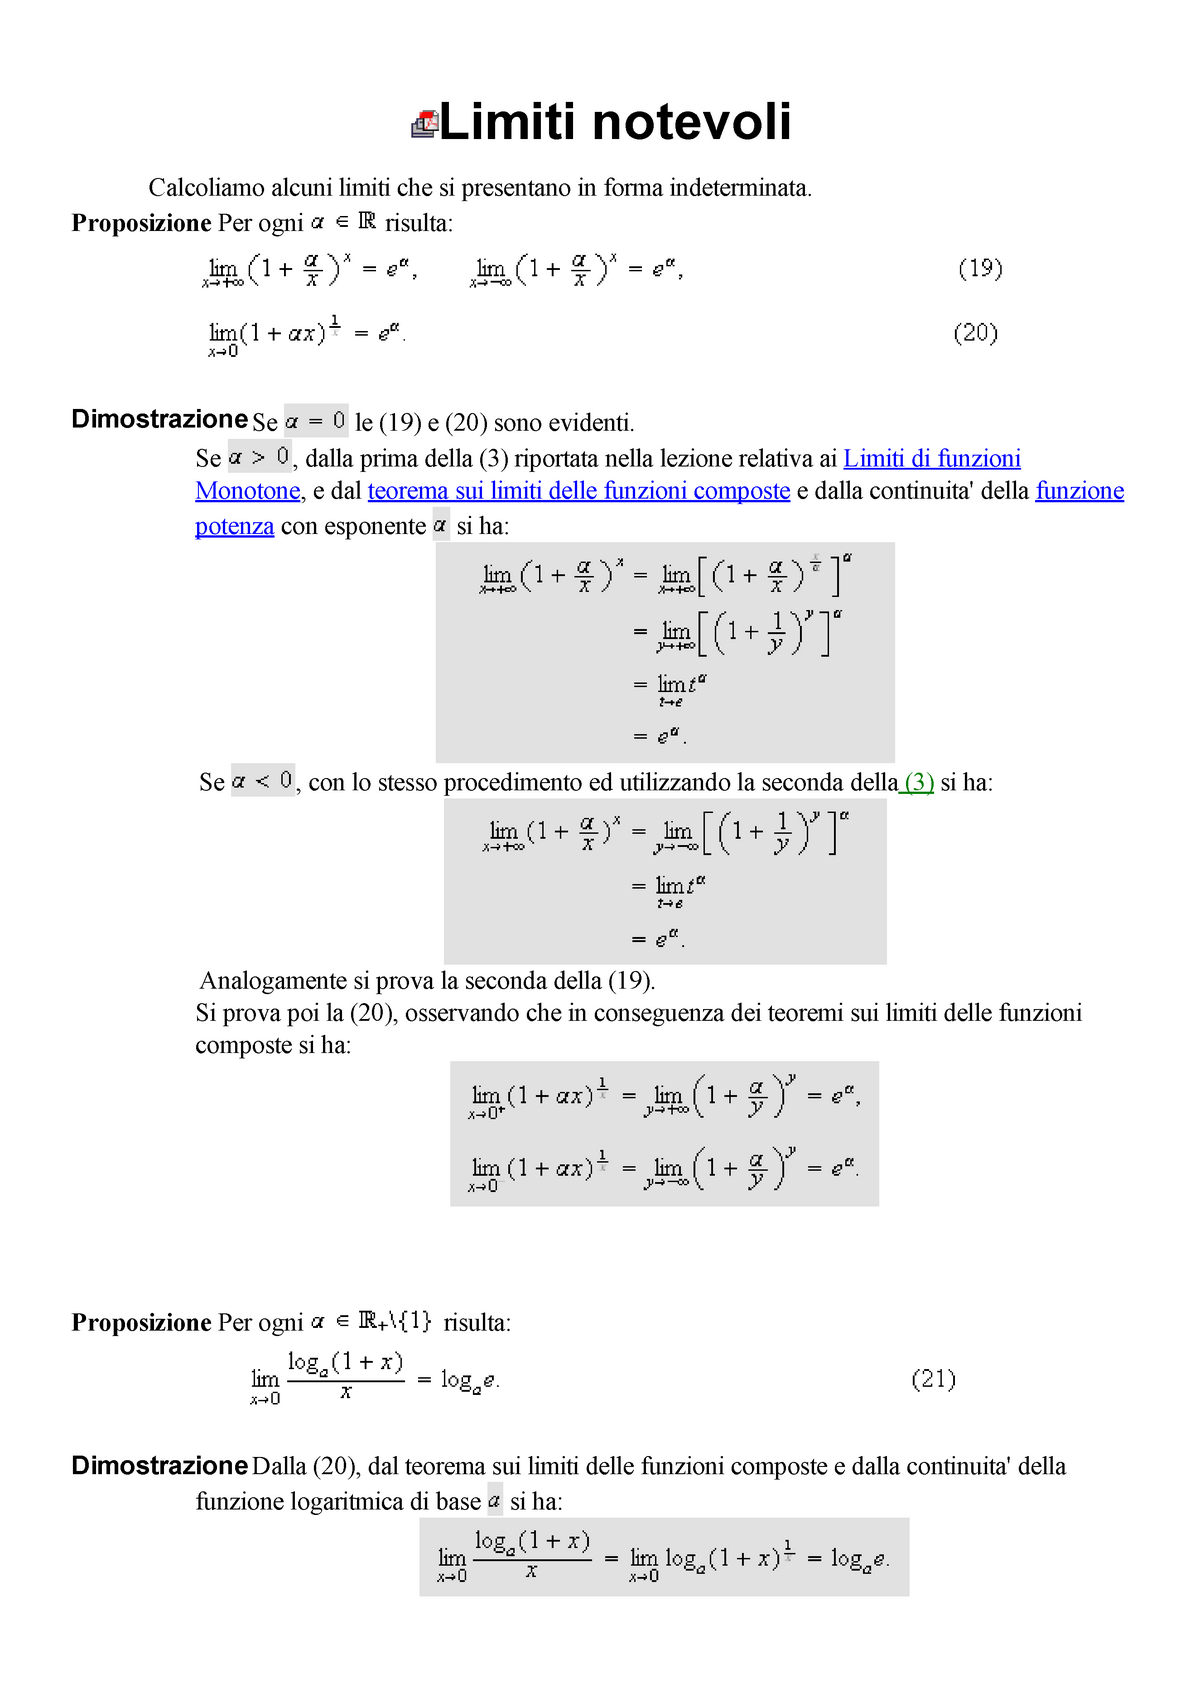 Appunti Su Limiti Notevoli E Limiti Di Funzioni Monotone Ed Elementari Matematica I Aa 2015 8403